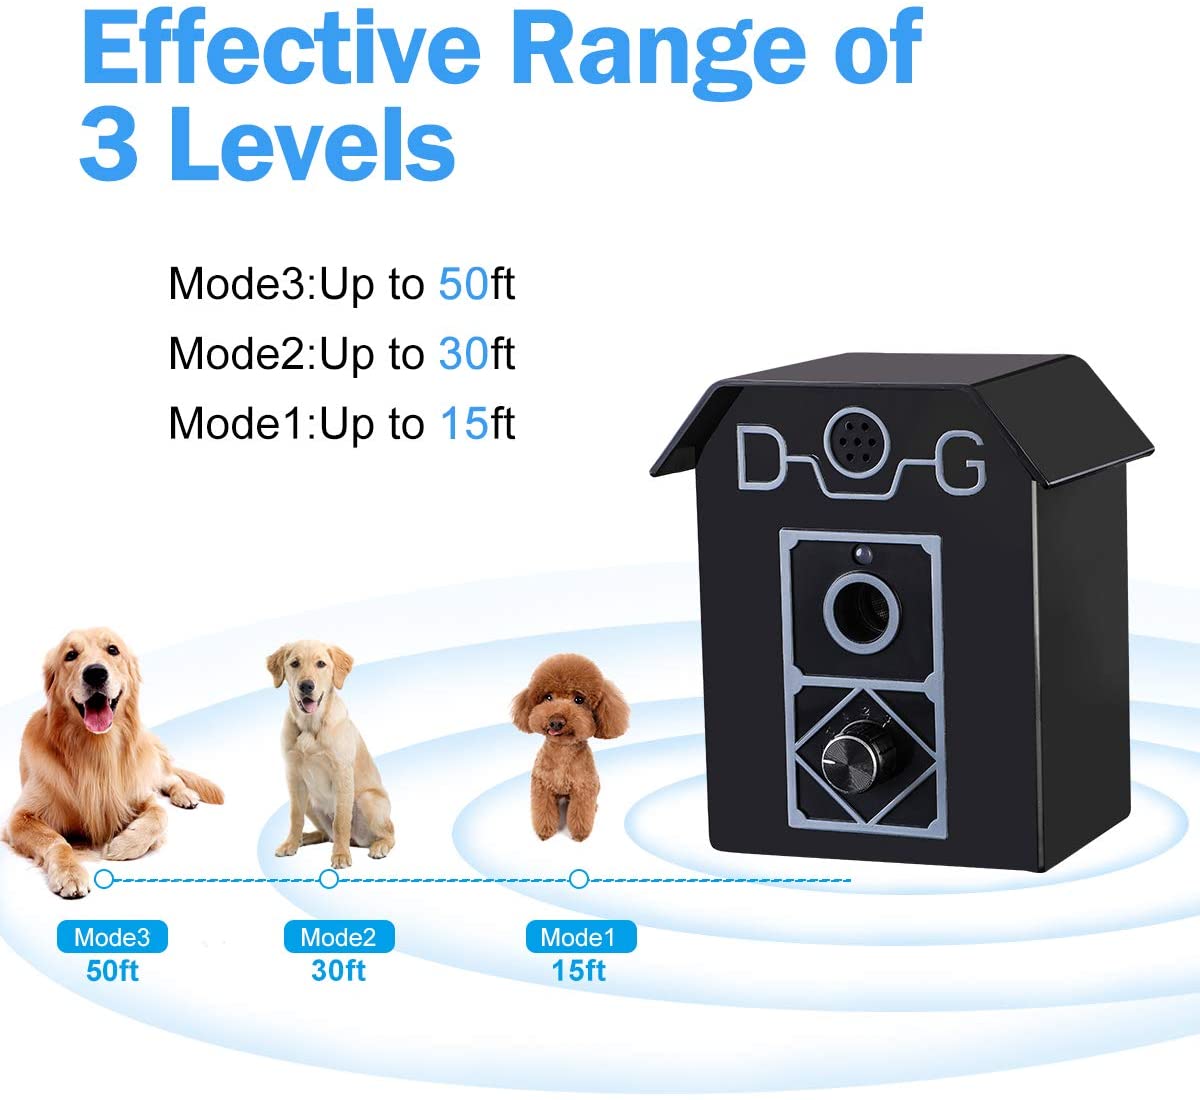  Antiladridos Perros Impermeable Collar de Adiestramiento Dispositivo Anti Barking Ultrasonidos para Perros Control de Corteza para Perros Impermeable 100% Seguro para Mascotas y Humanos Adecuado 